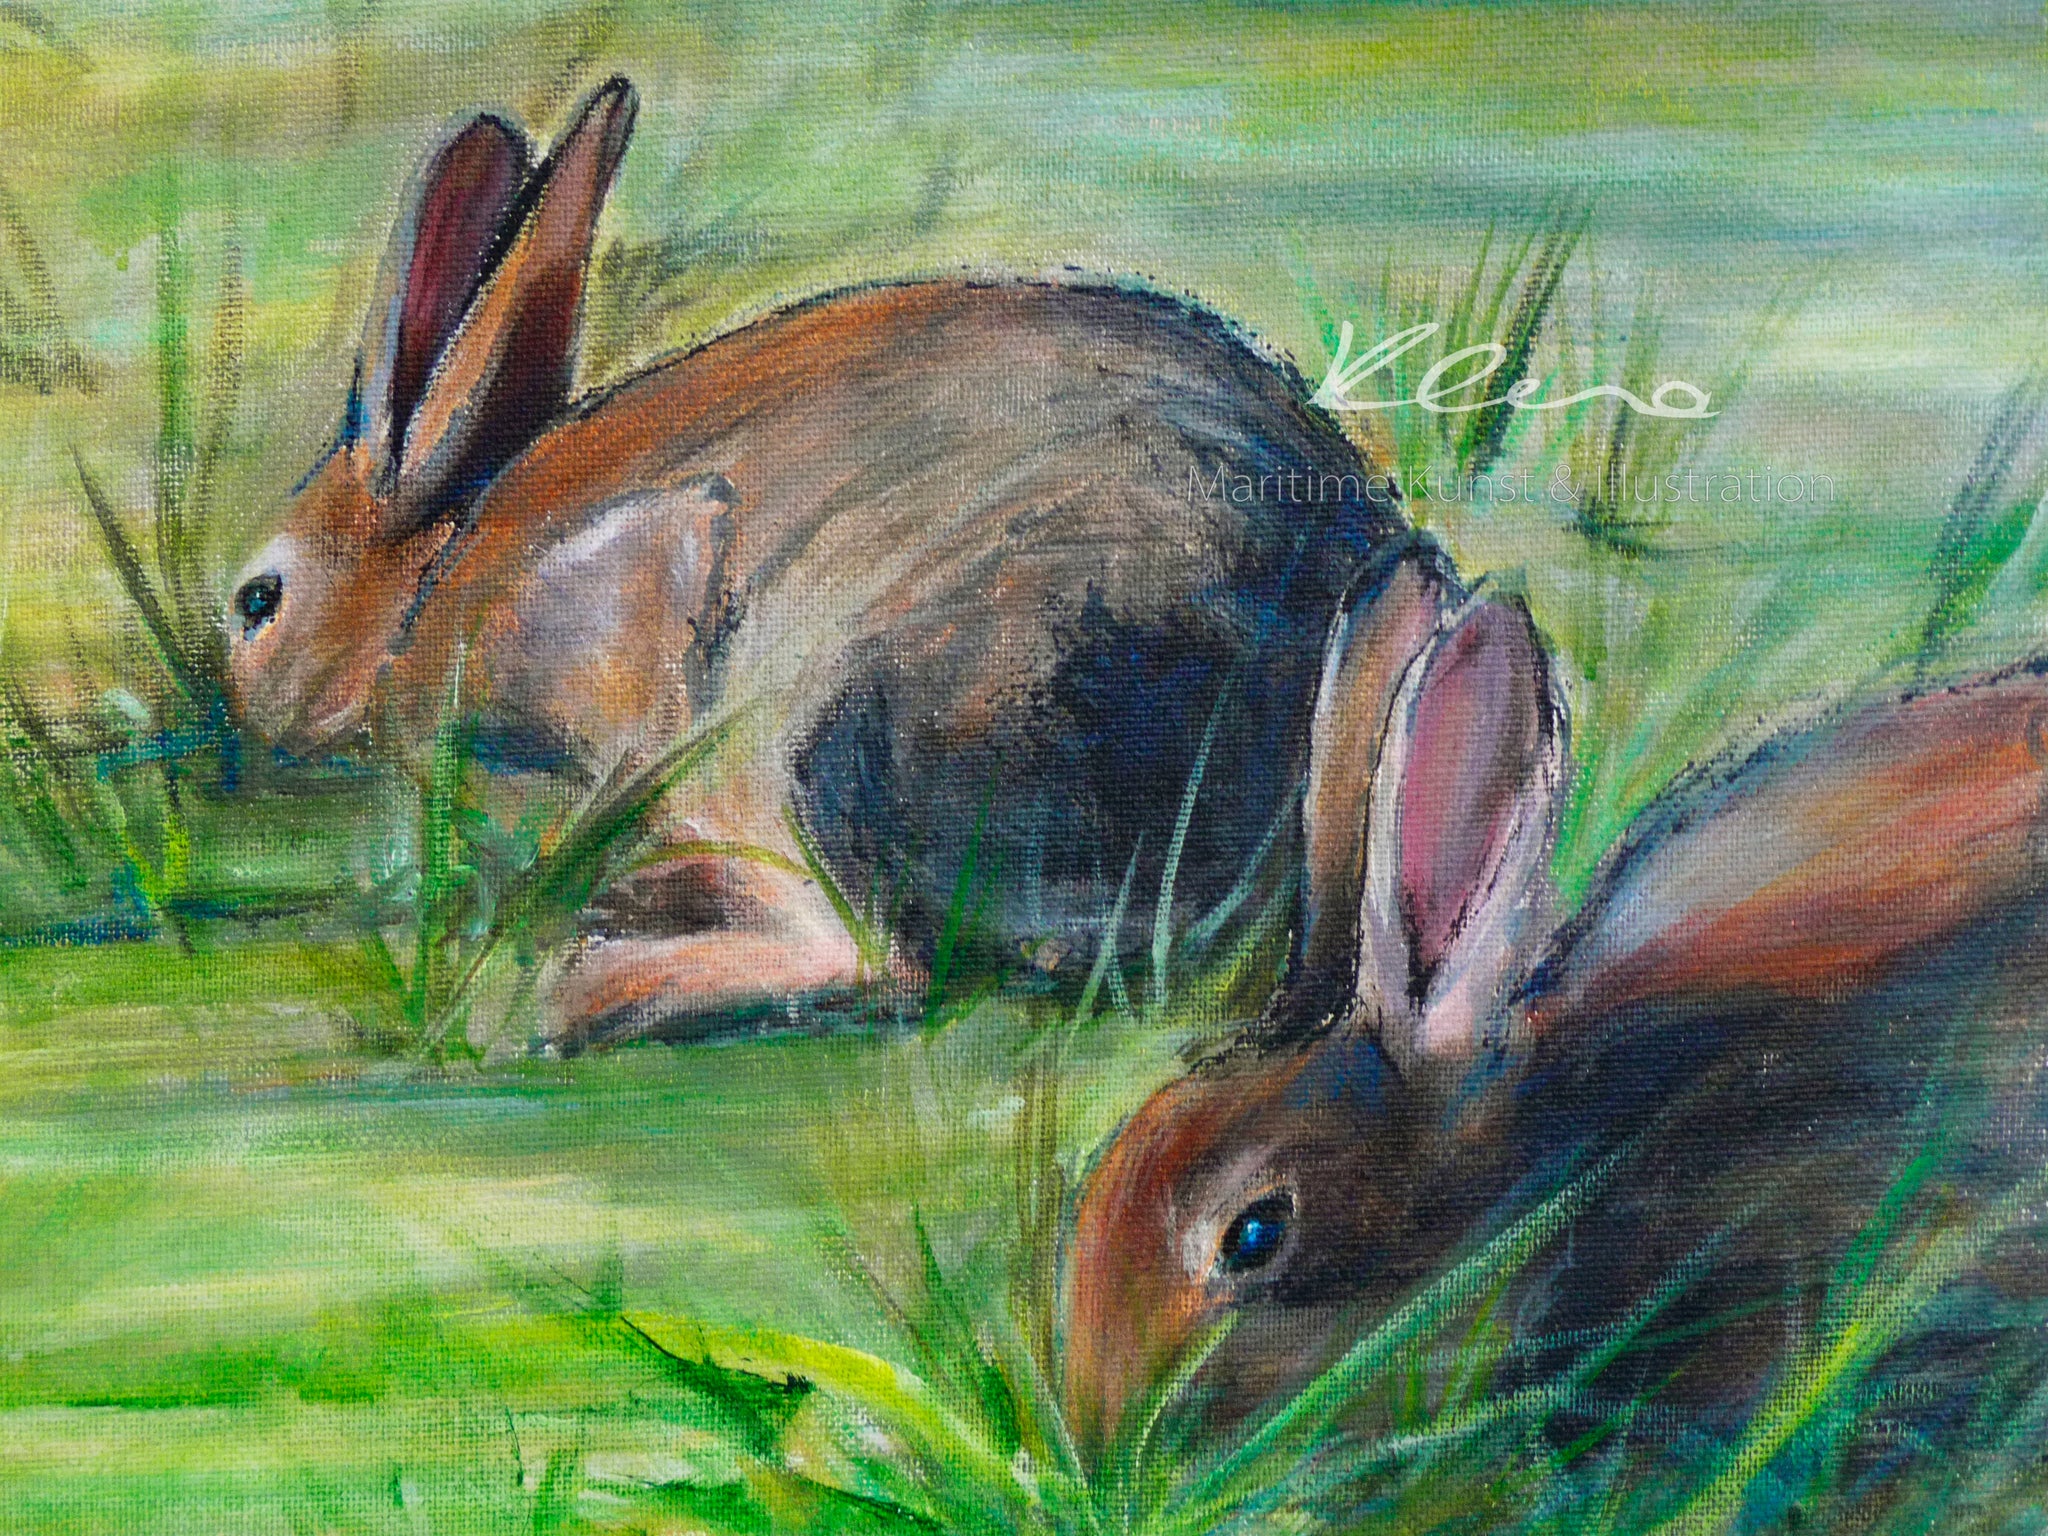 Die kleinen Bewohner der Nordsee Inseln, die Kaninchen, trifft man besonders häufig auf Amrum an. Nordsee Inseln Kunstdrucke von Susanne Klena.